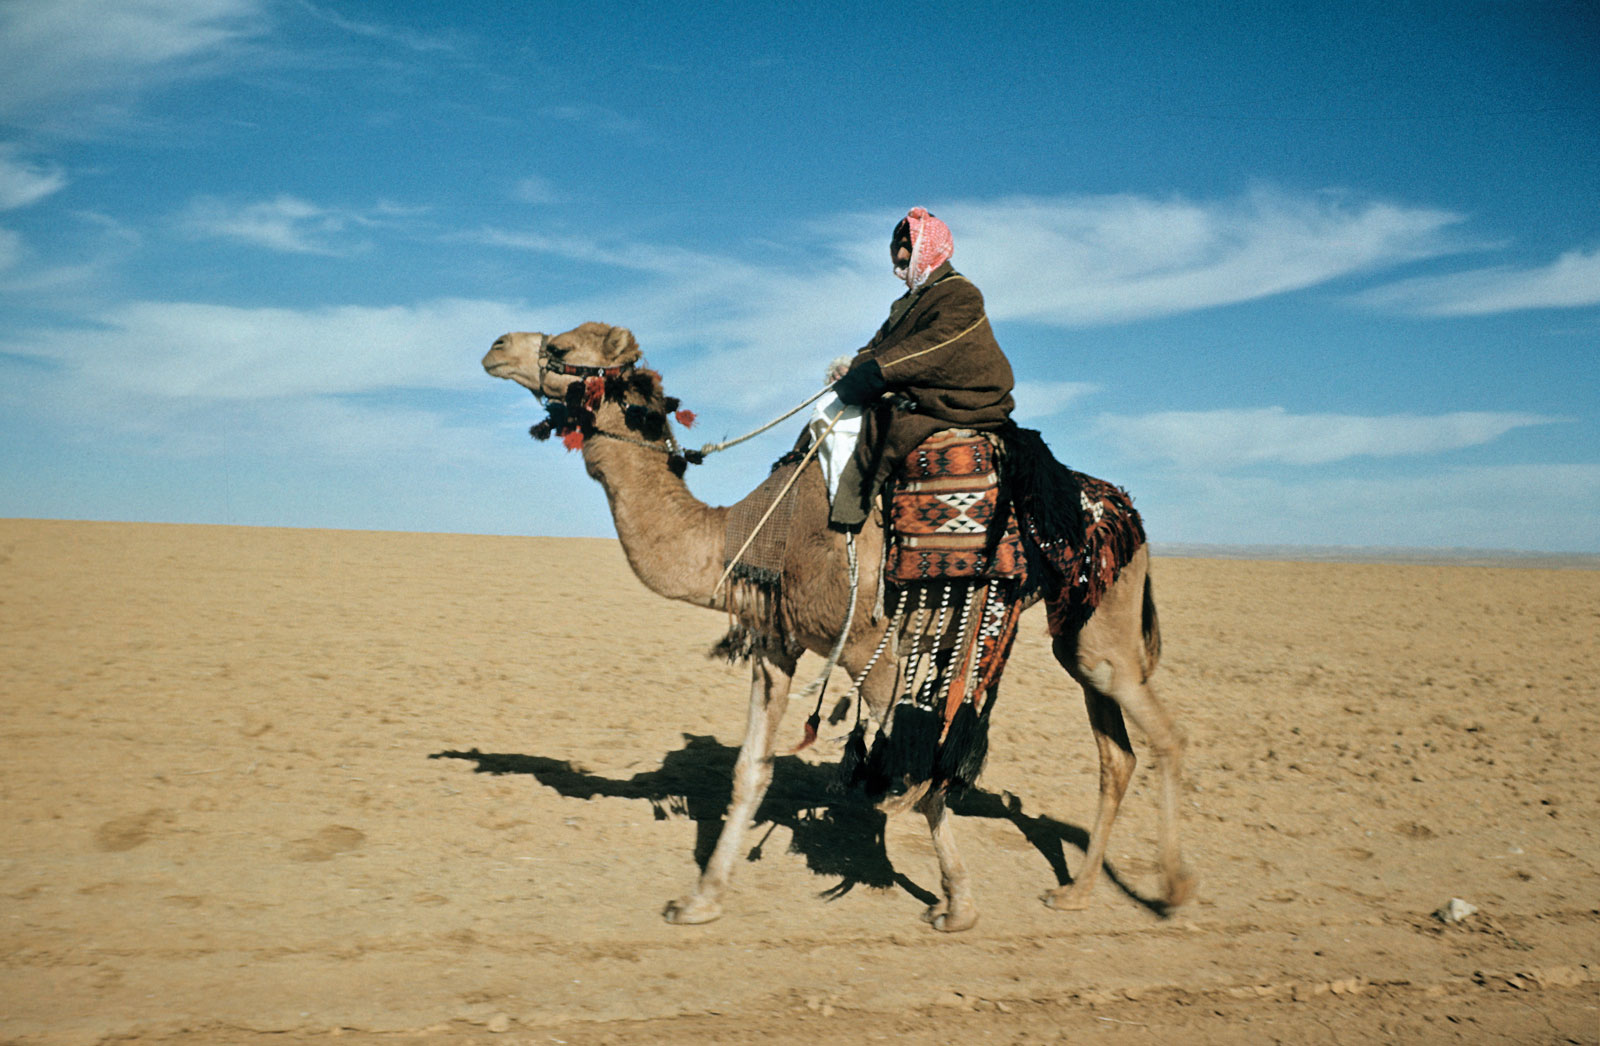 Тумачење сна камиле од Ибн Сирина